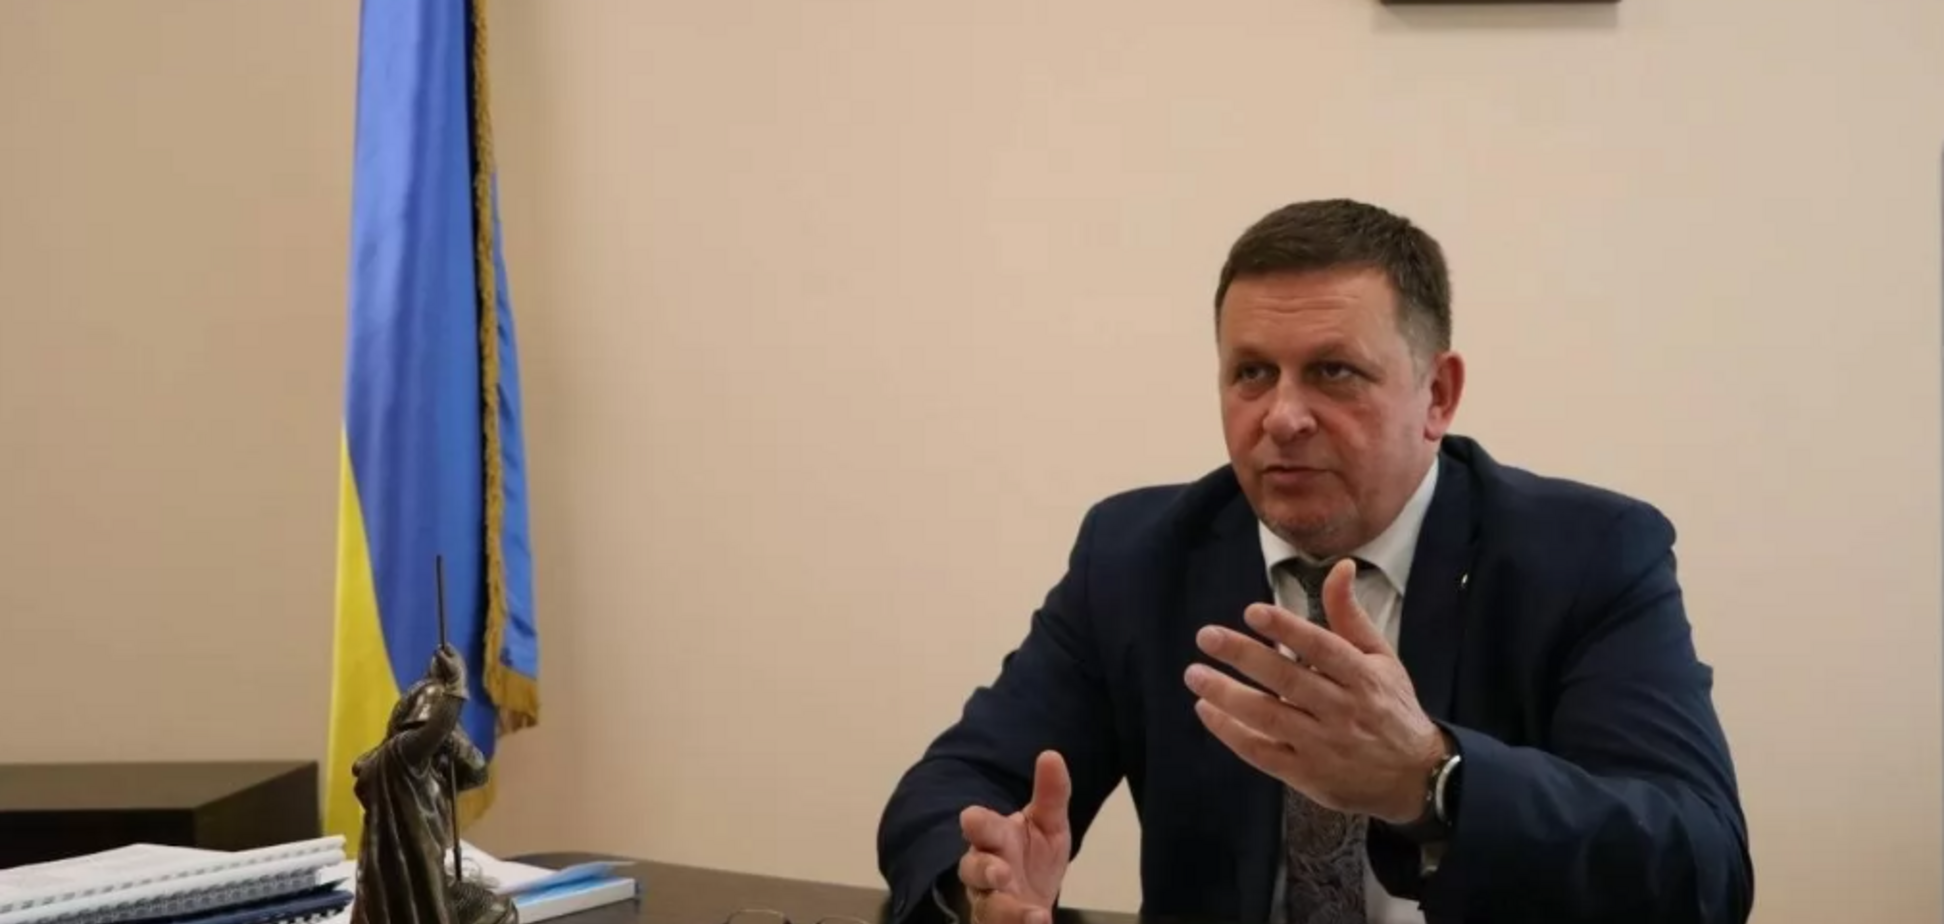 'Це не корупція': юриста обурила справа проти екс-заступника міністра оборони Шаповалова